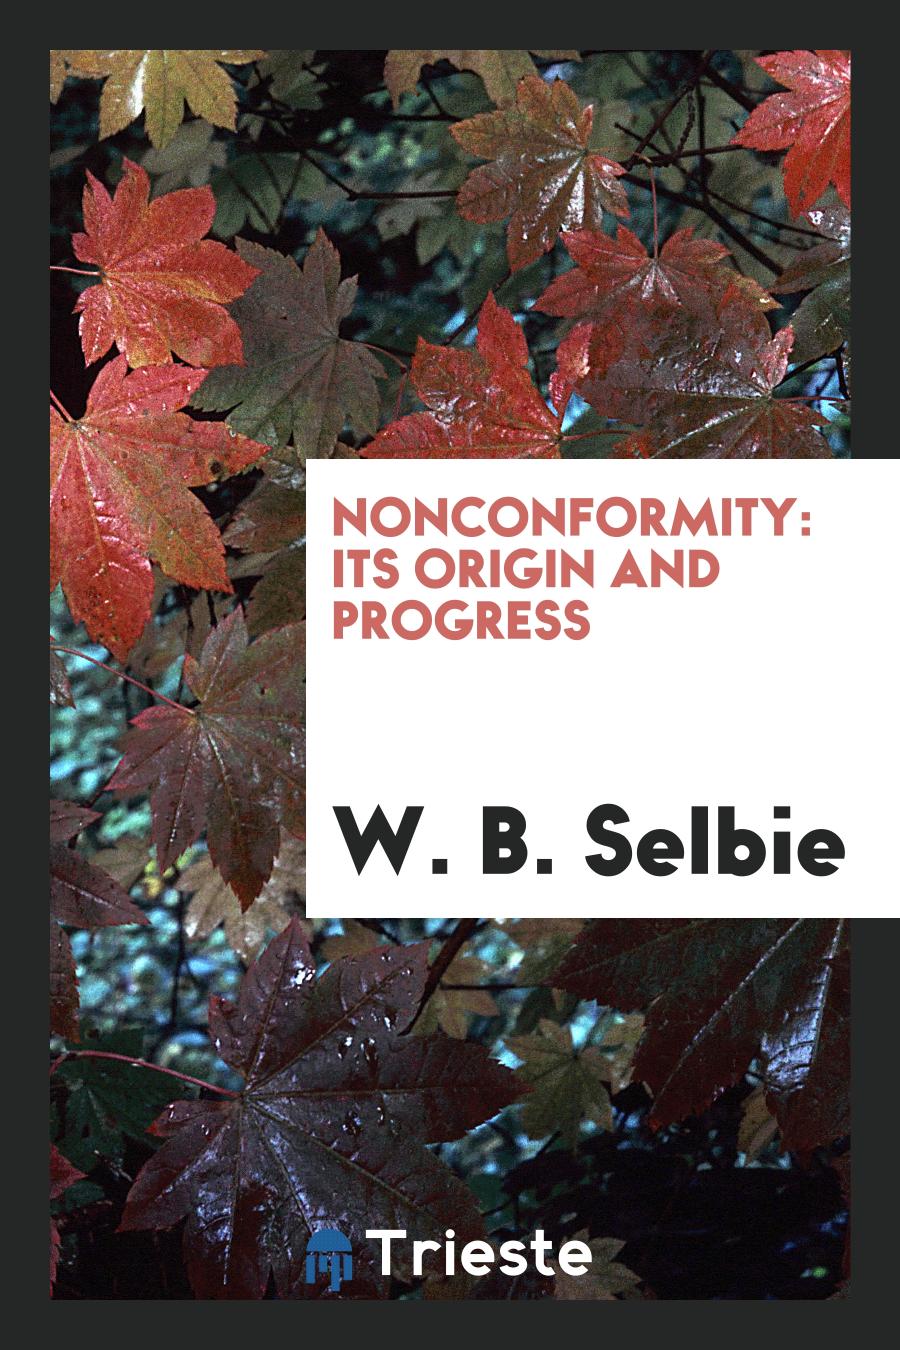 Nonconformity: its origin and progress